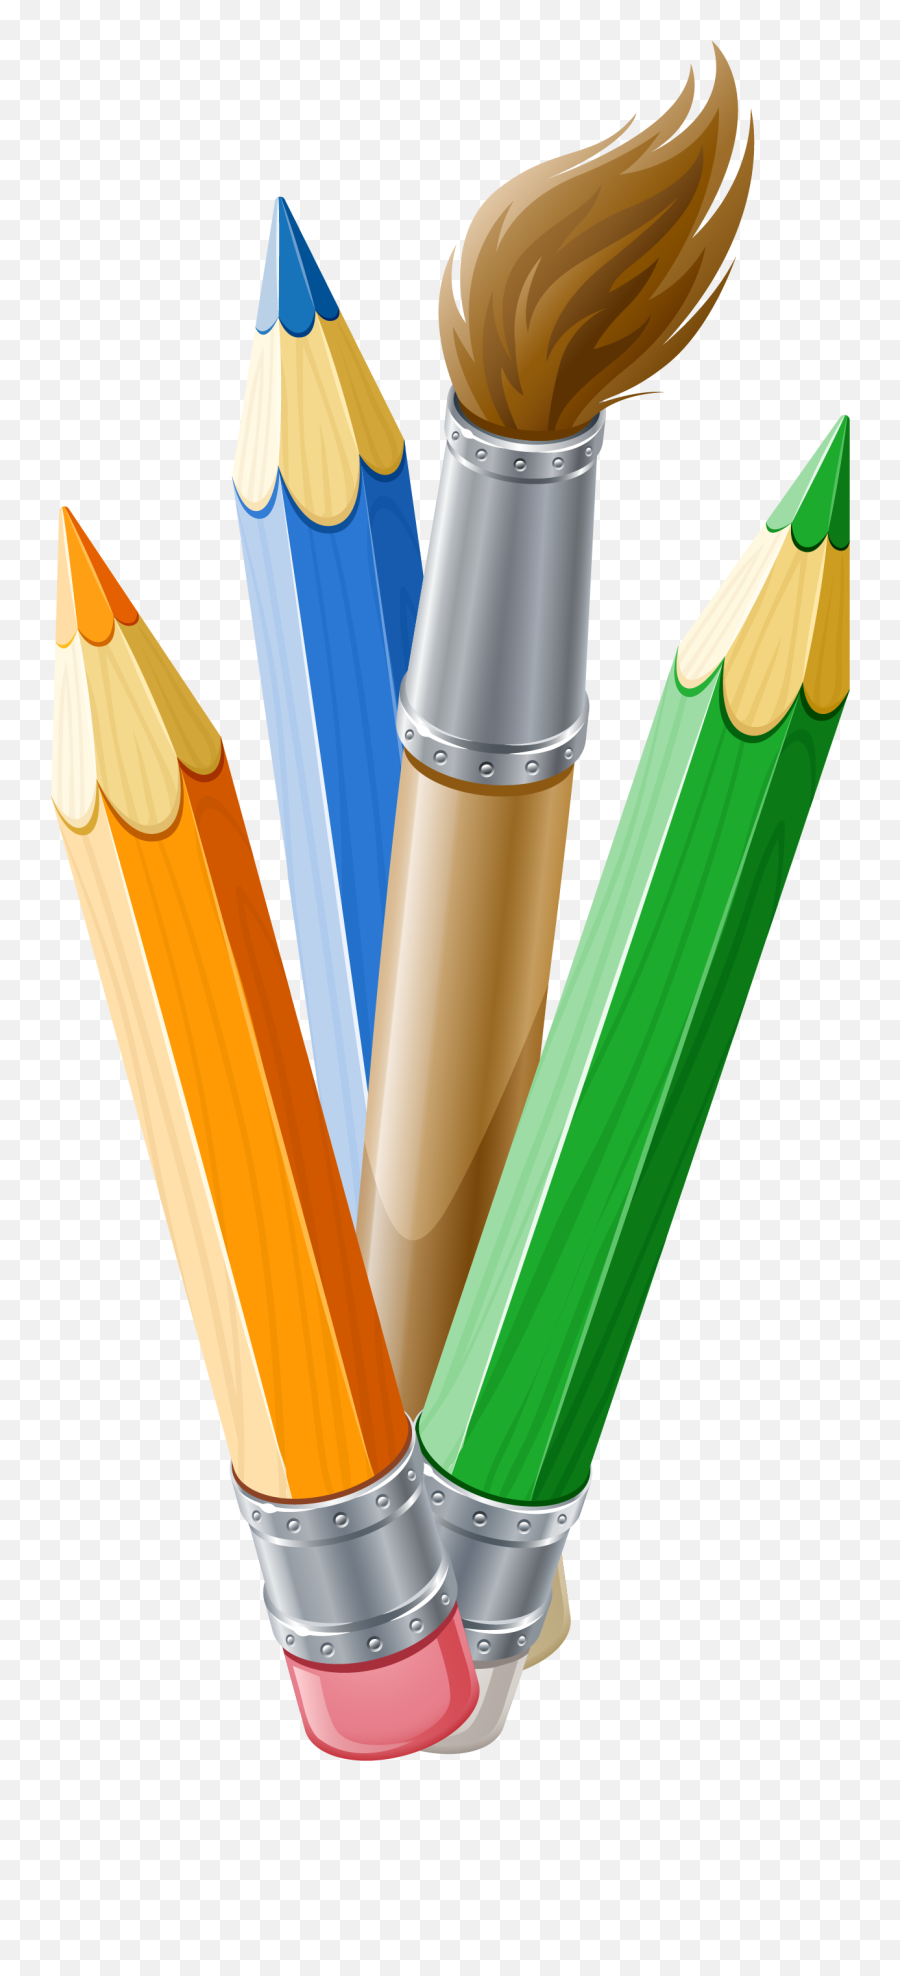 Paintbrush Clipart Pens Paintbrush - Pencil Paint Brush Pen Emoji,Paintbrush Clipart